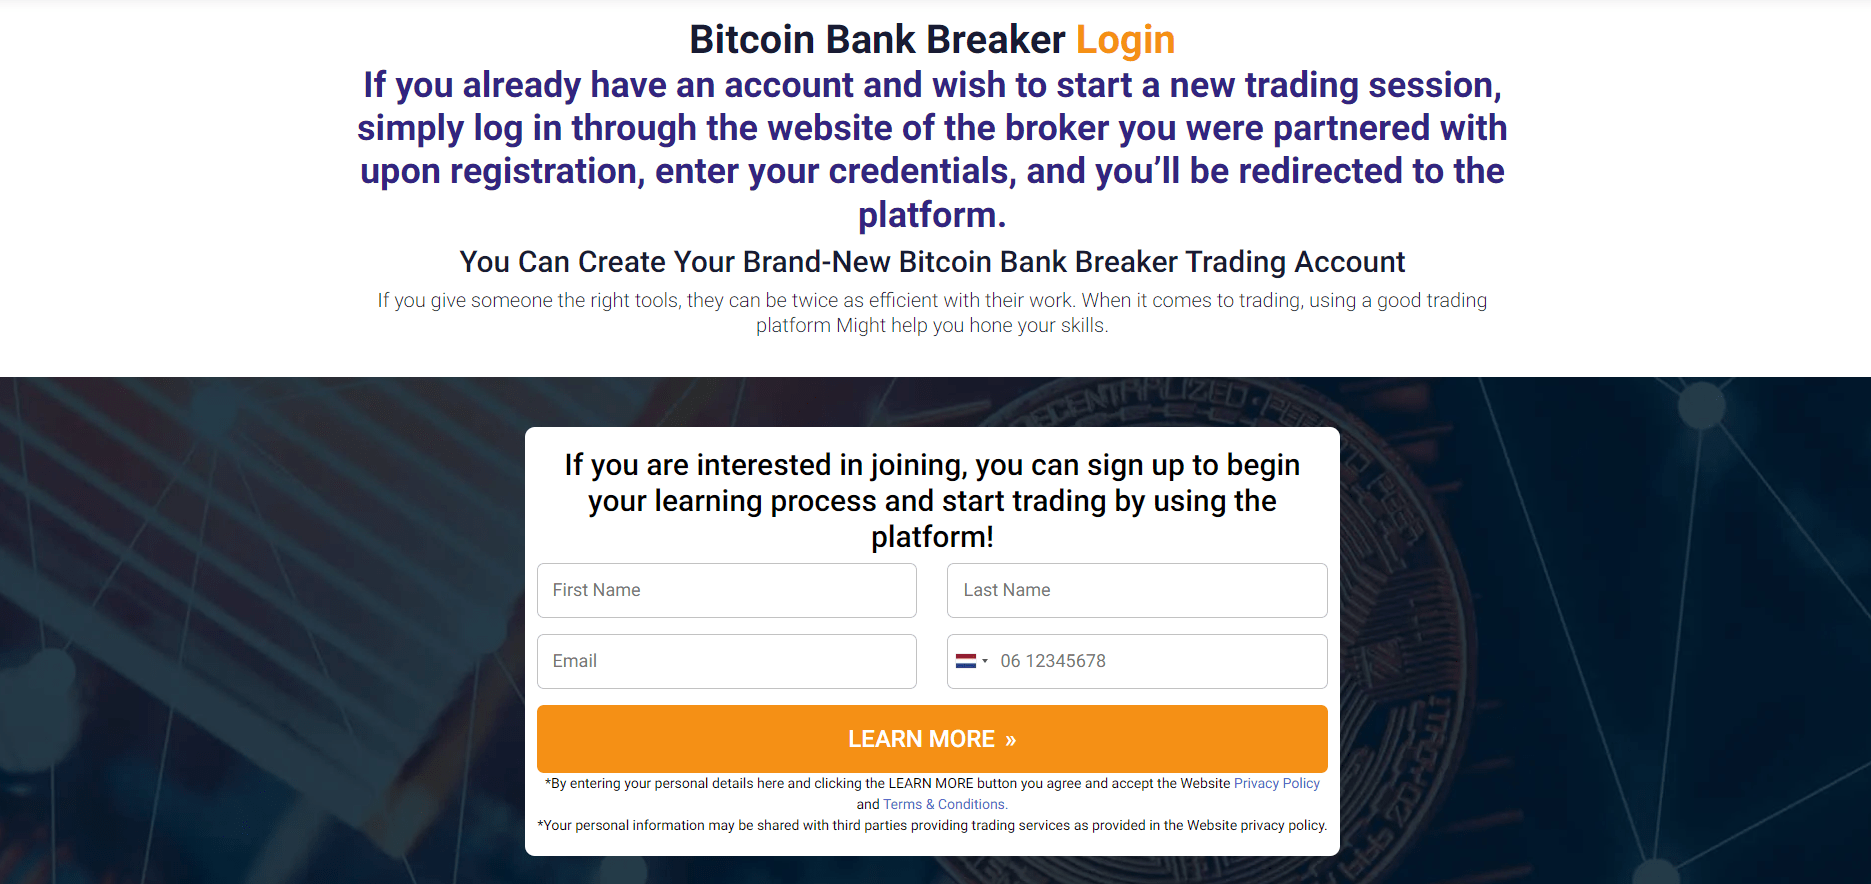 Bitcoin Bank Breaker Login